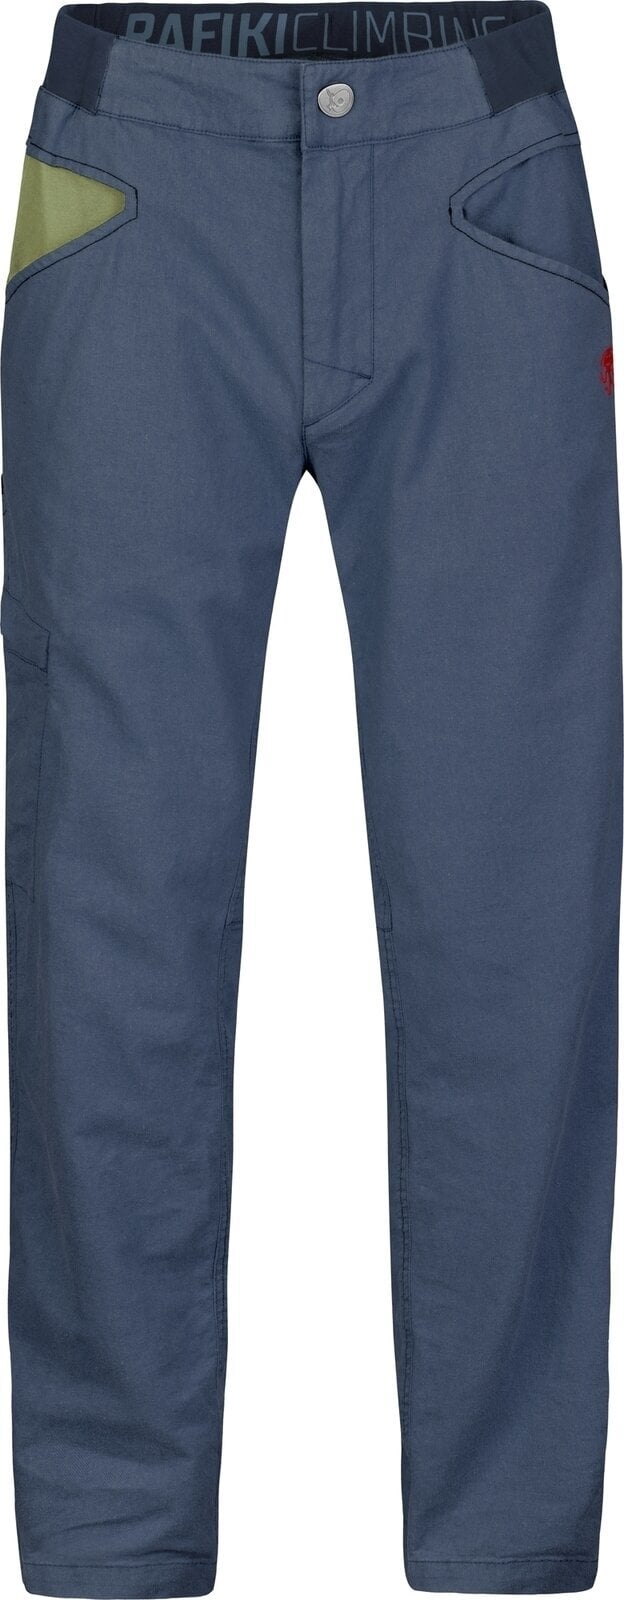 Spodnie outdoorowe Rafiki Grip Man Pants India Ink S Spodnie outdoorowe